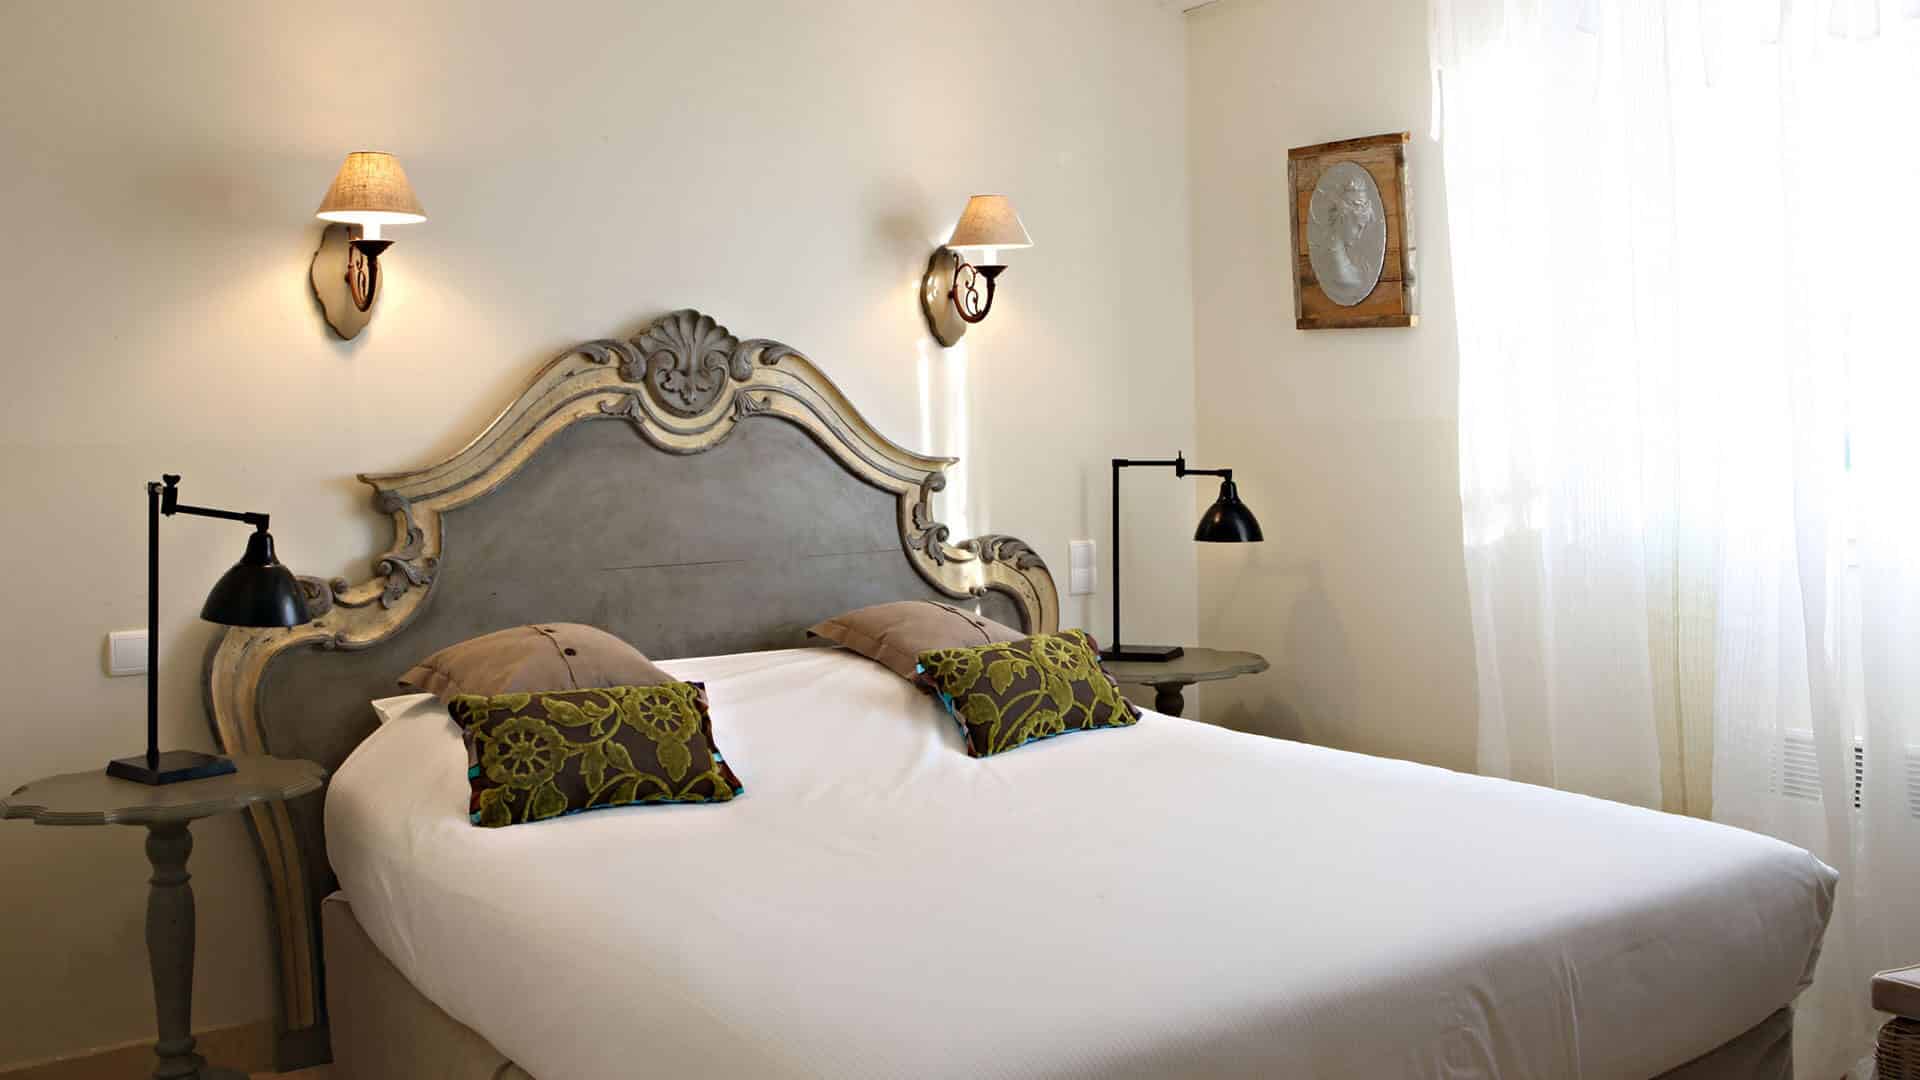 Location vacances particulier PACA | Villa blanche | Chambre double de charme